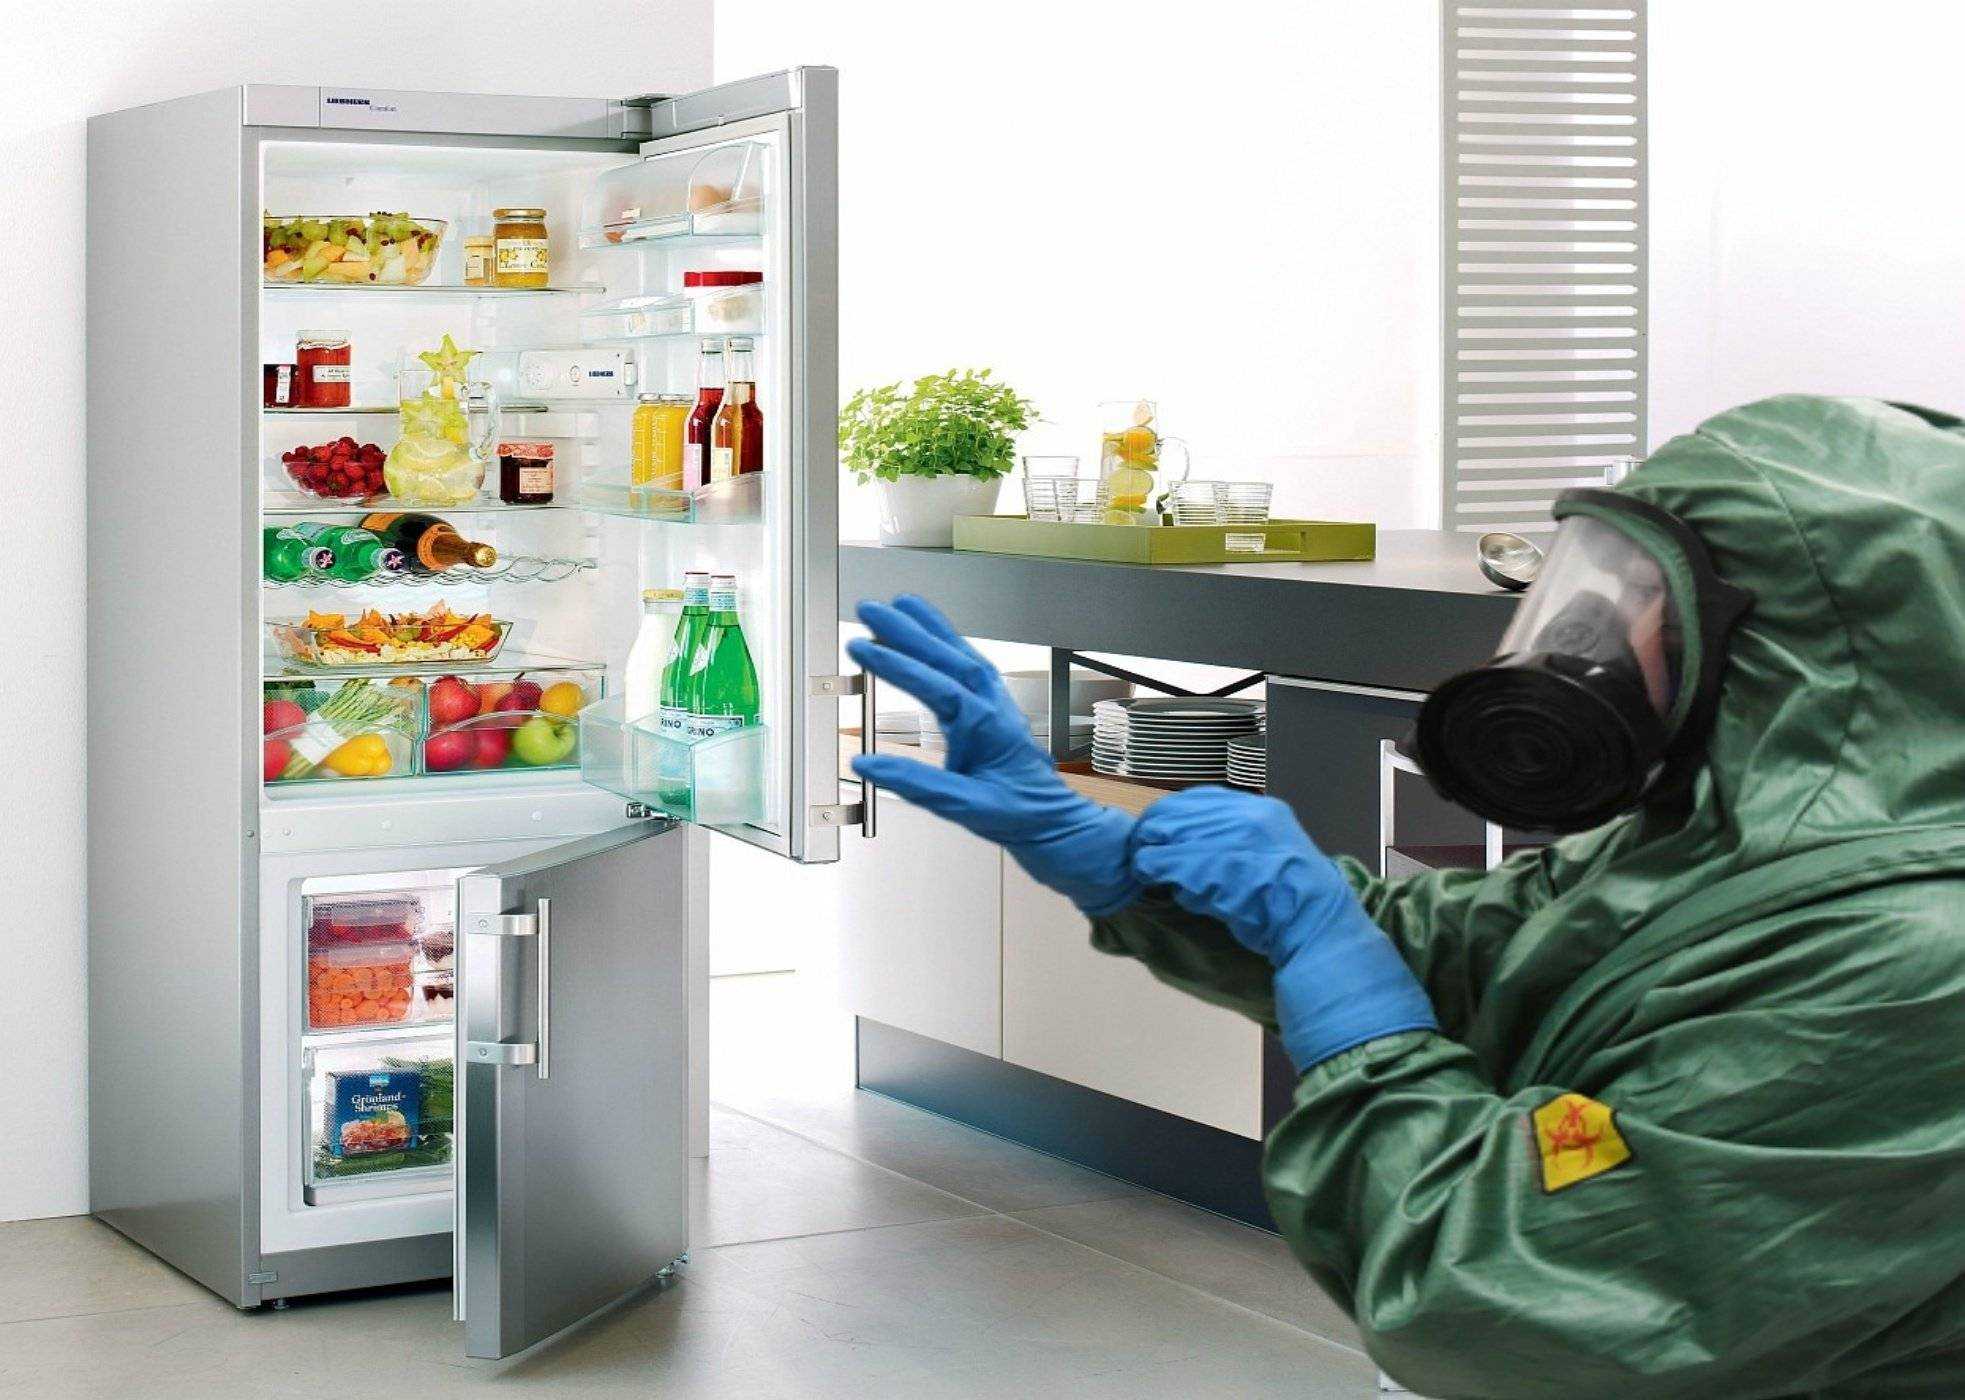 Удалить запах холодильника домашних. Мытье холодильника. Плесень в холодильнике. Тухлые продукты в холодильнике. Бактерии в холодильнике.